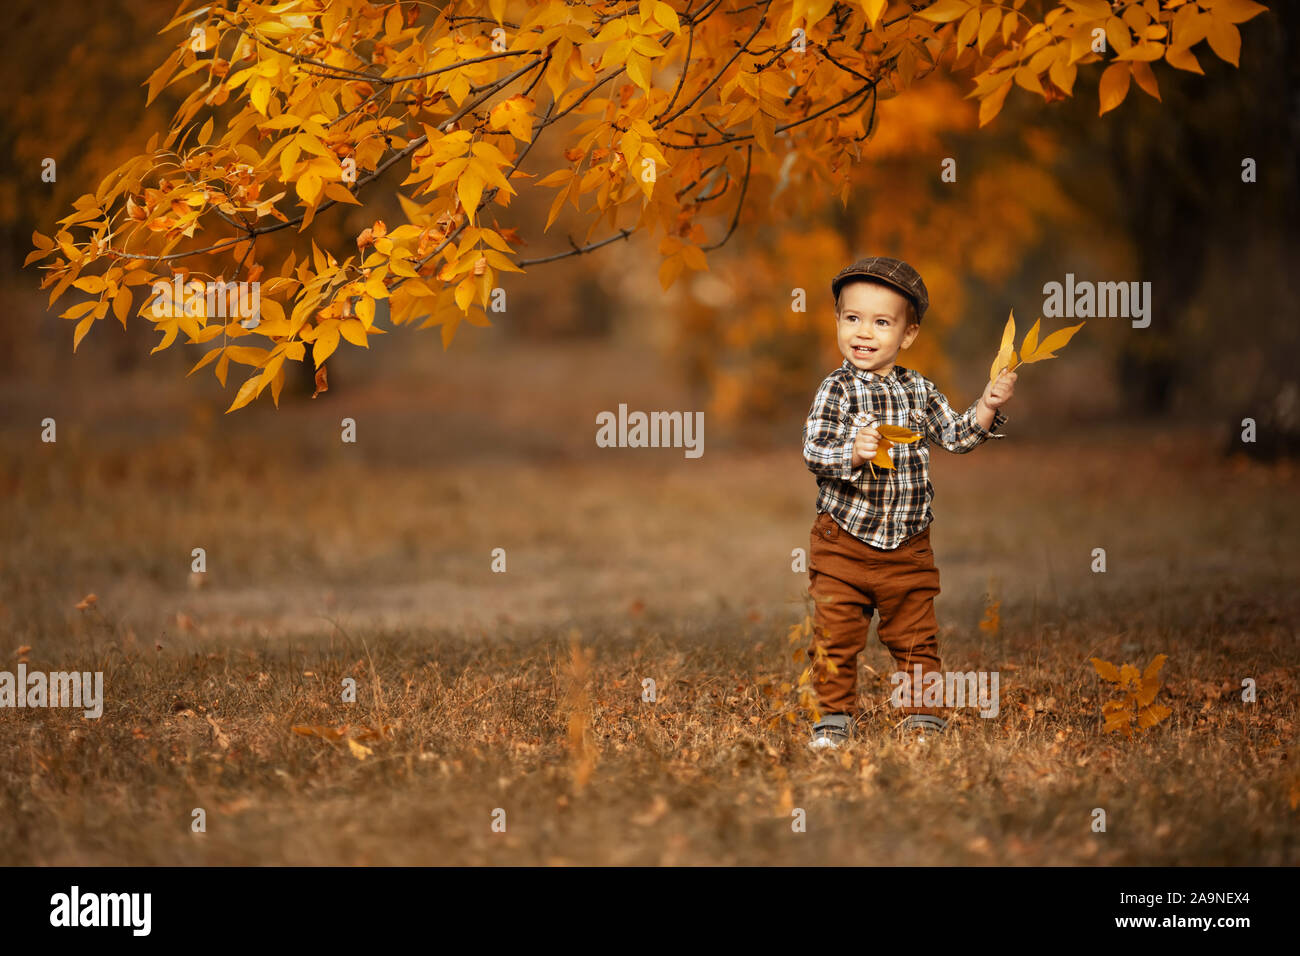 Herbst Portrait von glücklichen kleinen Jungen in karierte Kappe spielt mit gelb Blatt im Freien Stockfoto